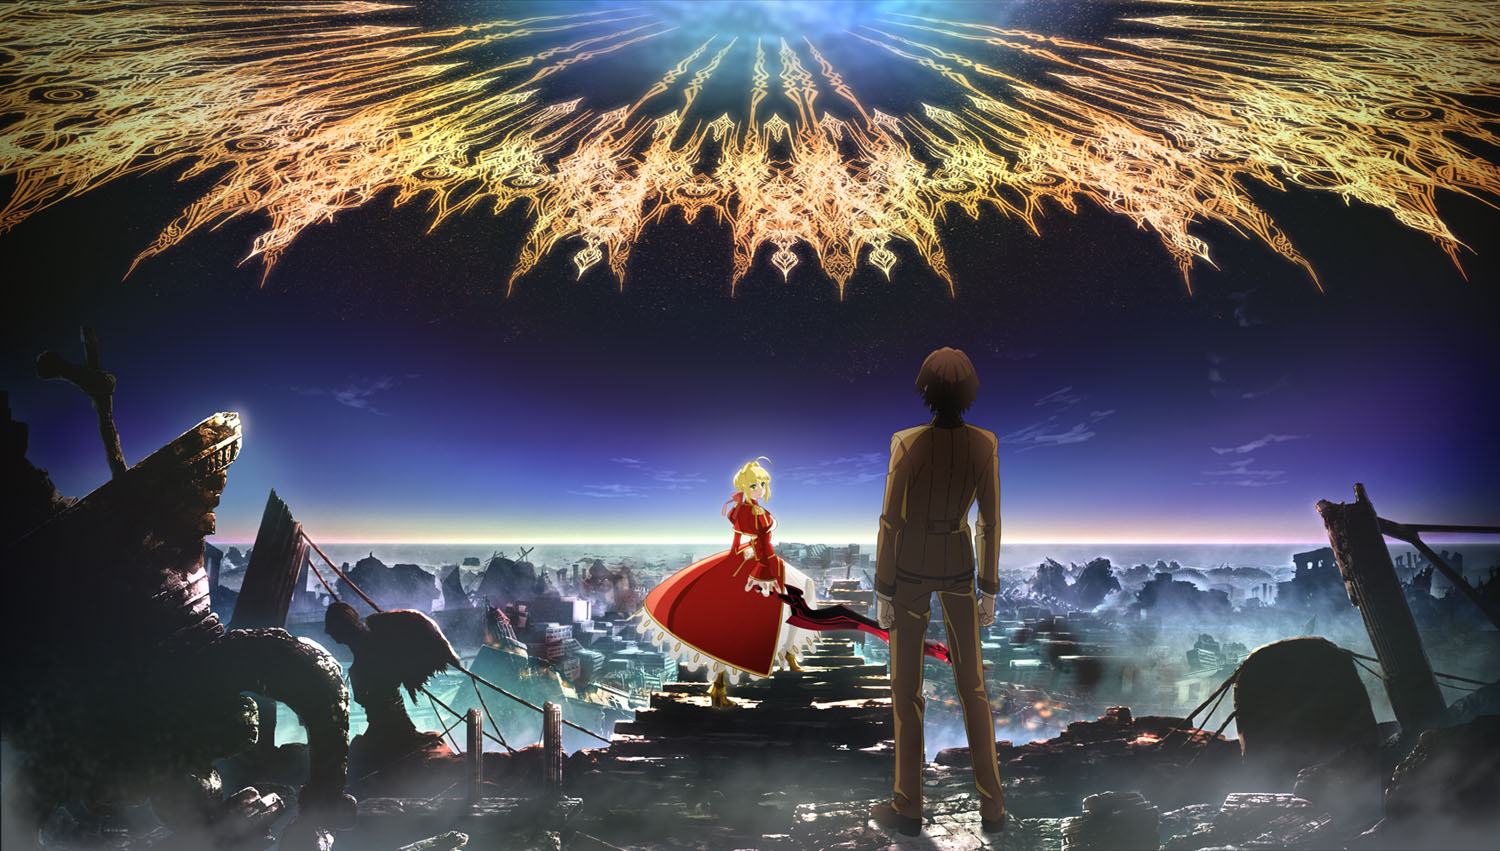 『Fate/EXTRA Last Encore』ビジュアル&PV公開